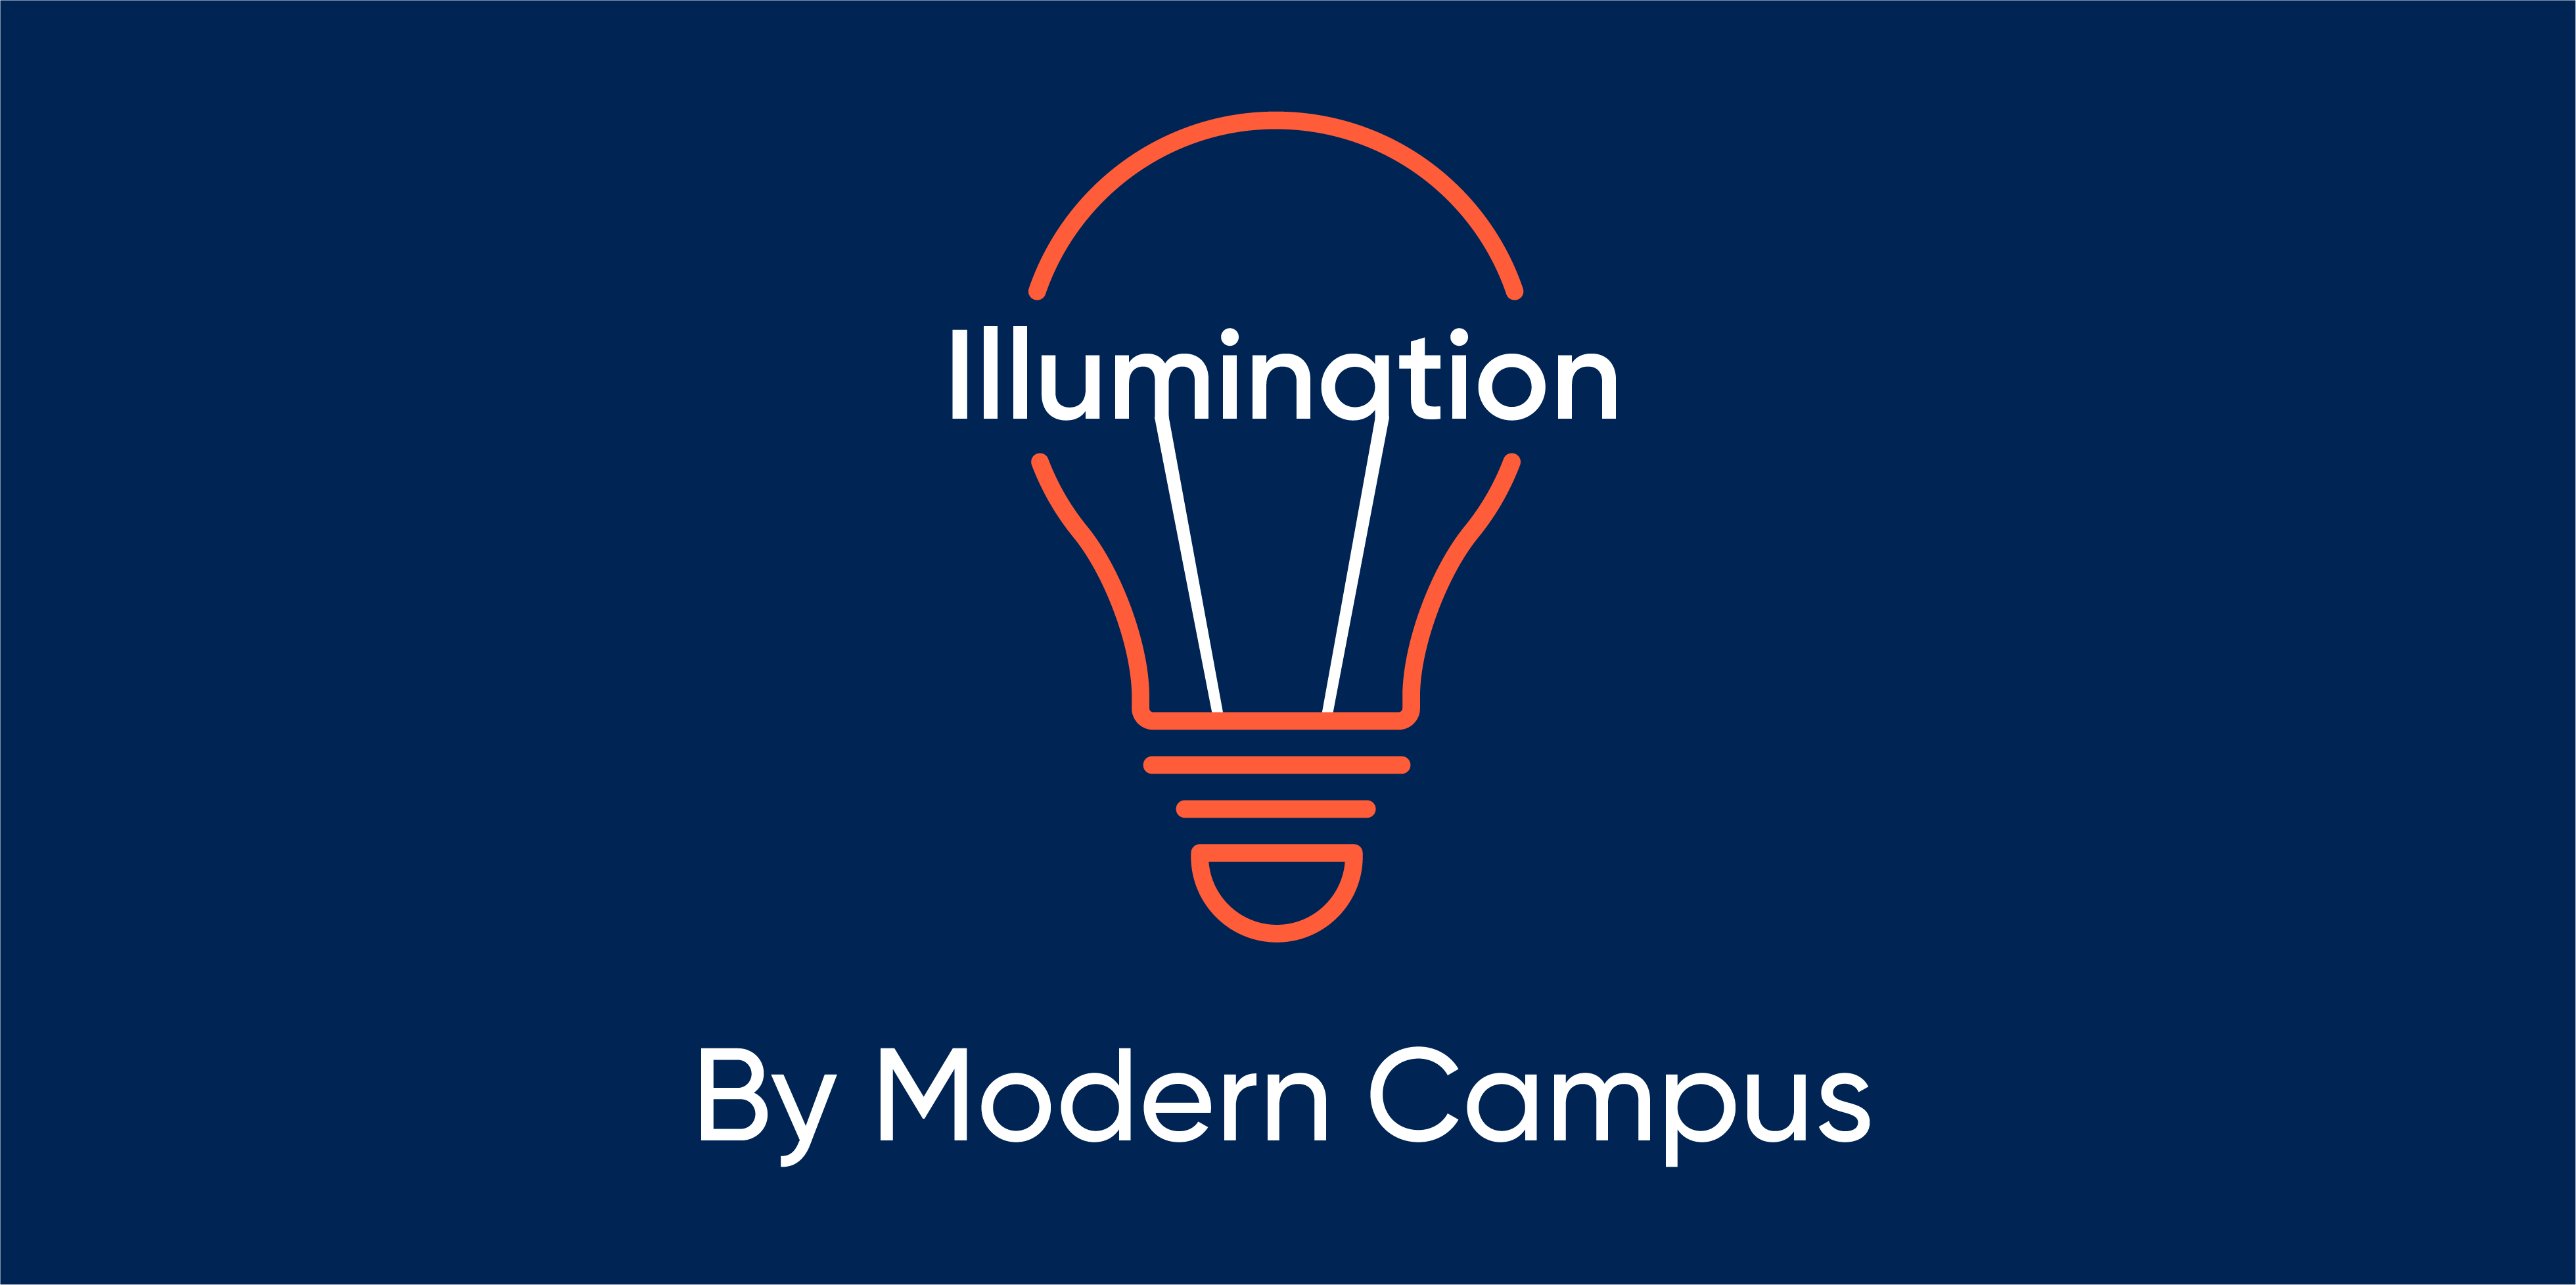 Episode 89: Illumination by Modern Campus